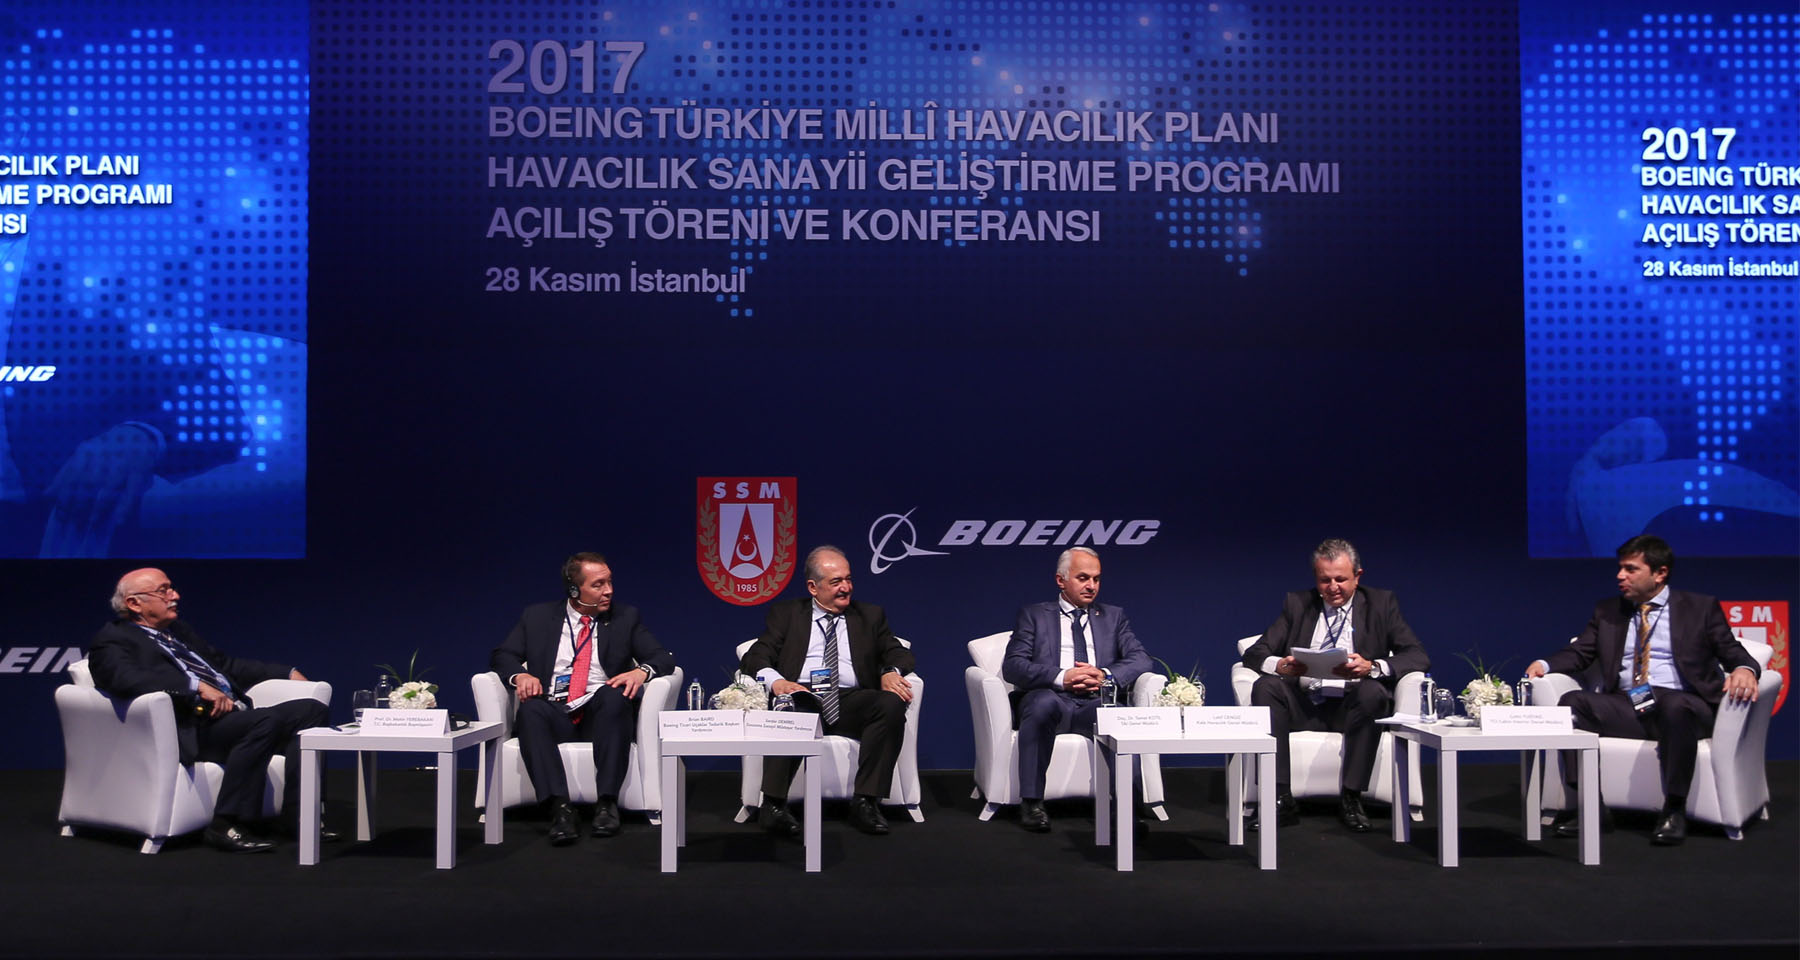 Boeing – Türkiye Millî Havacılık Planı